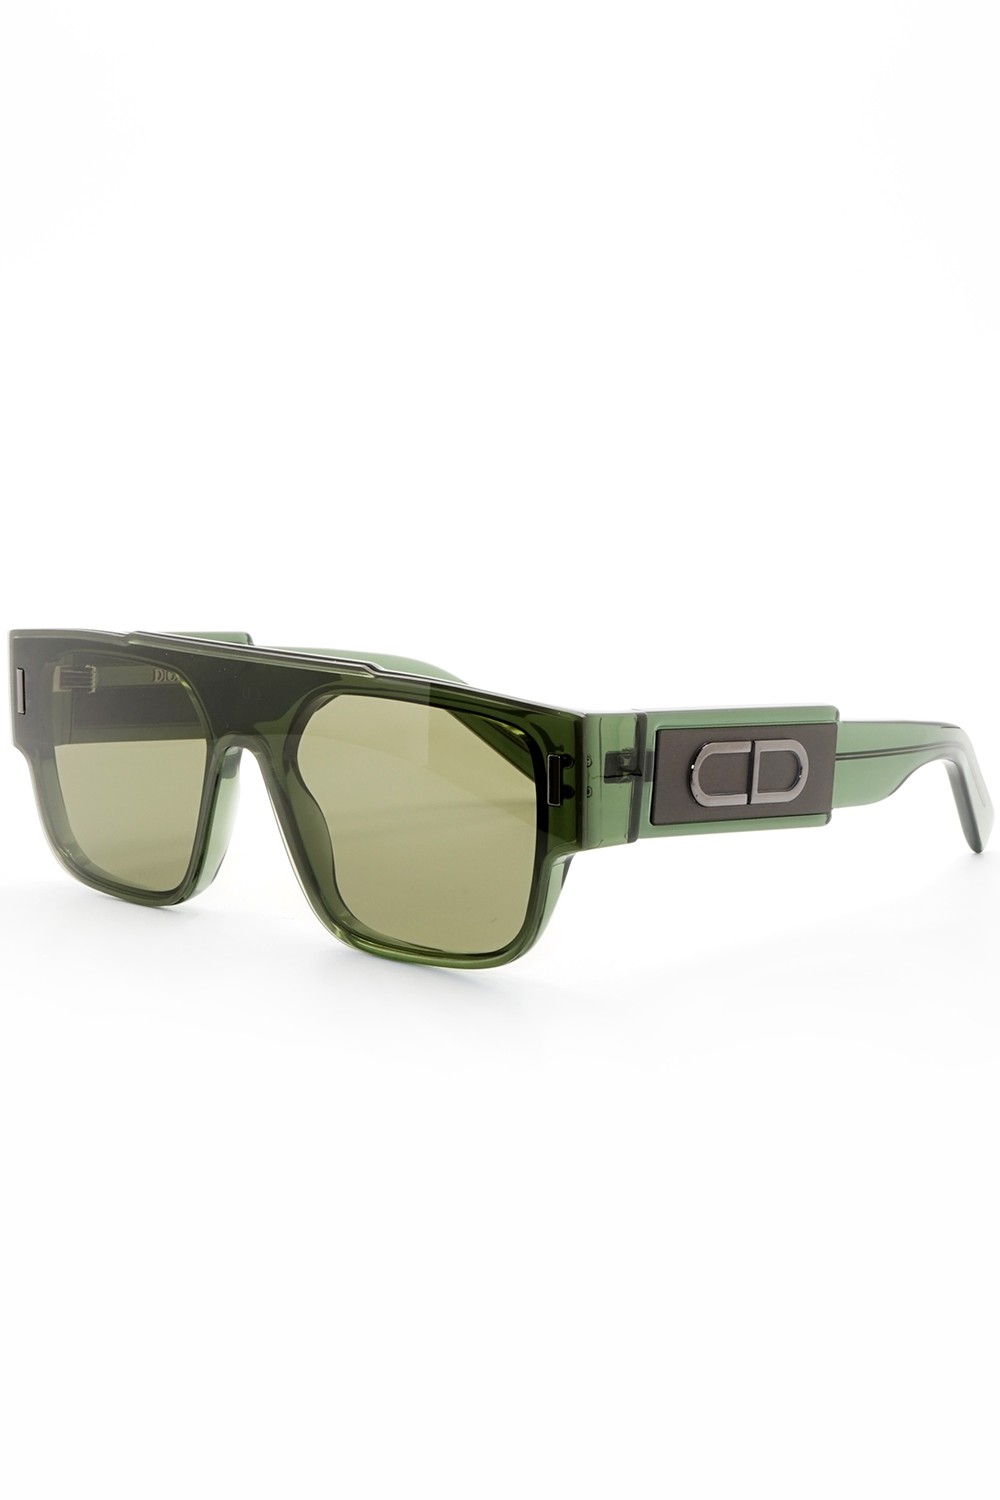 Christian Dior - Occhiali da sole in celluloide squadrati per uomo verde - M1I